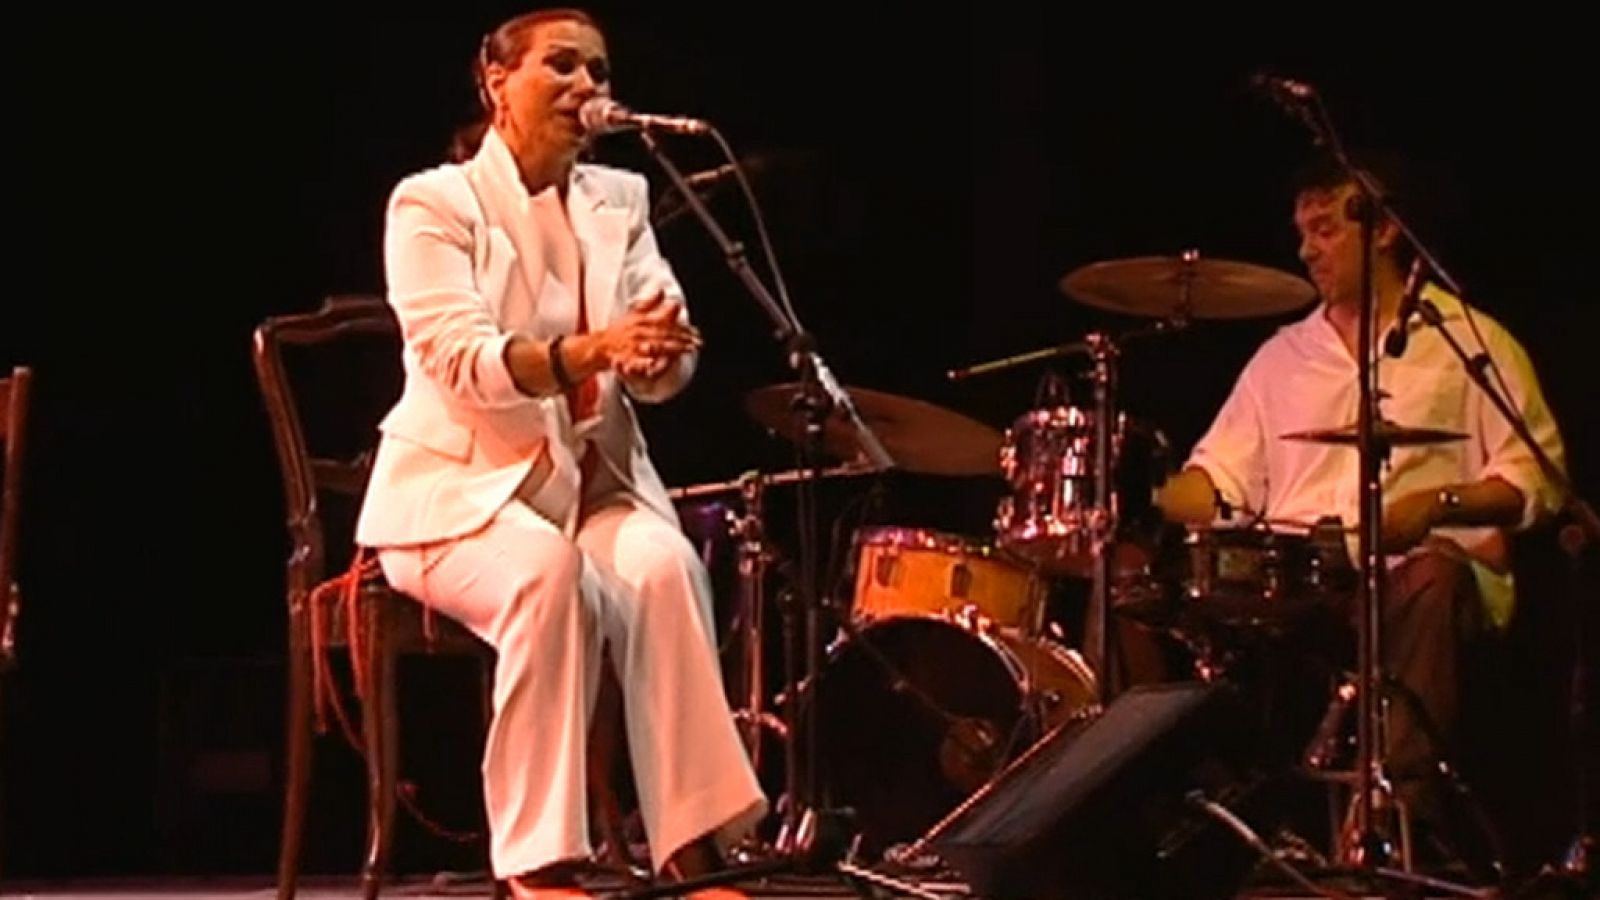 Miguel Poveda, Arcángel y Susi cantan "La leyenda del tiempo" (2004)